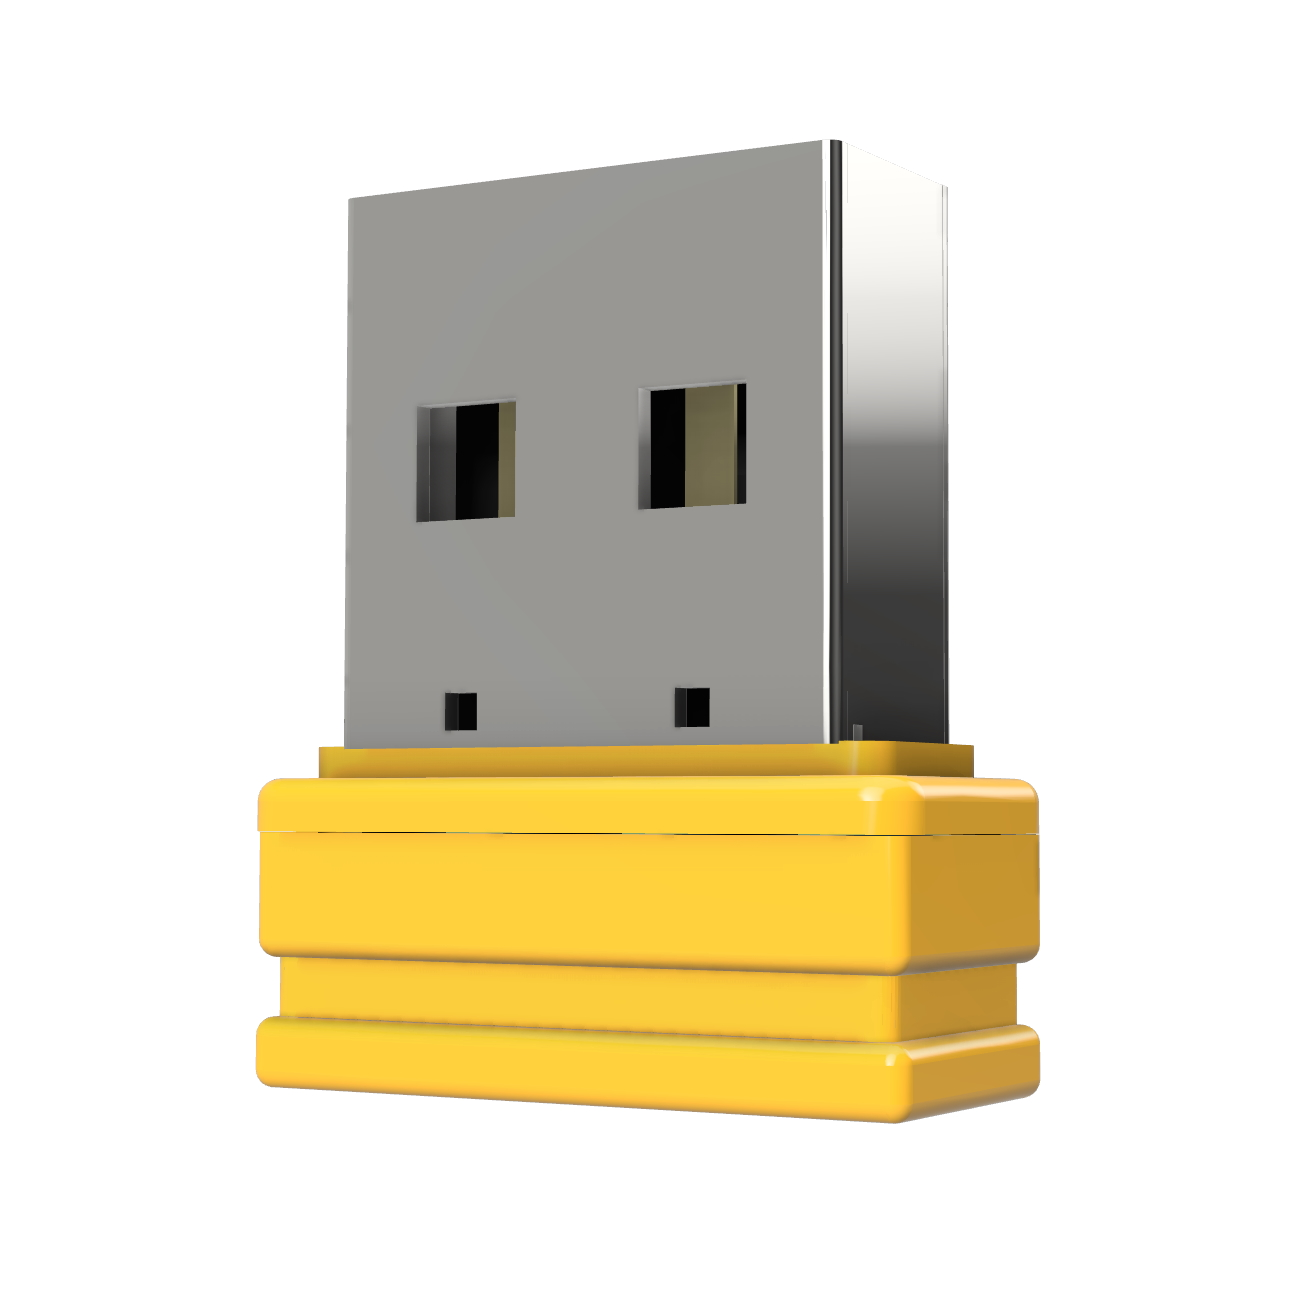 USB GERMANY ®ULTRA Mini 8 GB) USB-Stick (Gelb, P1